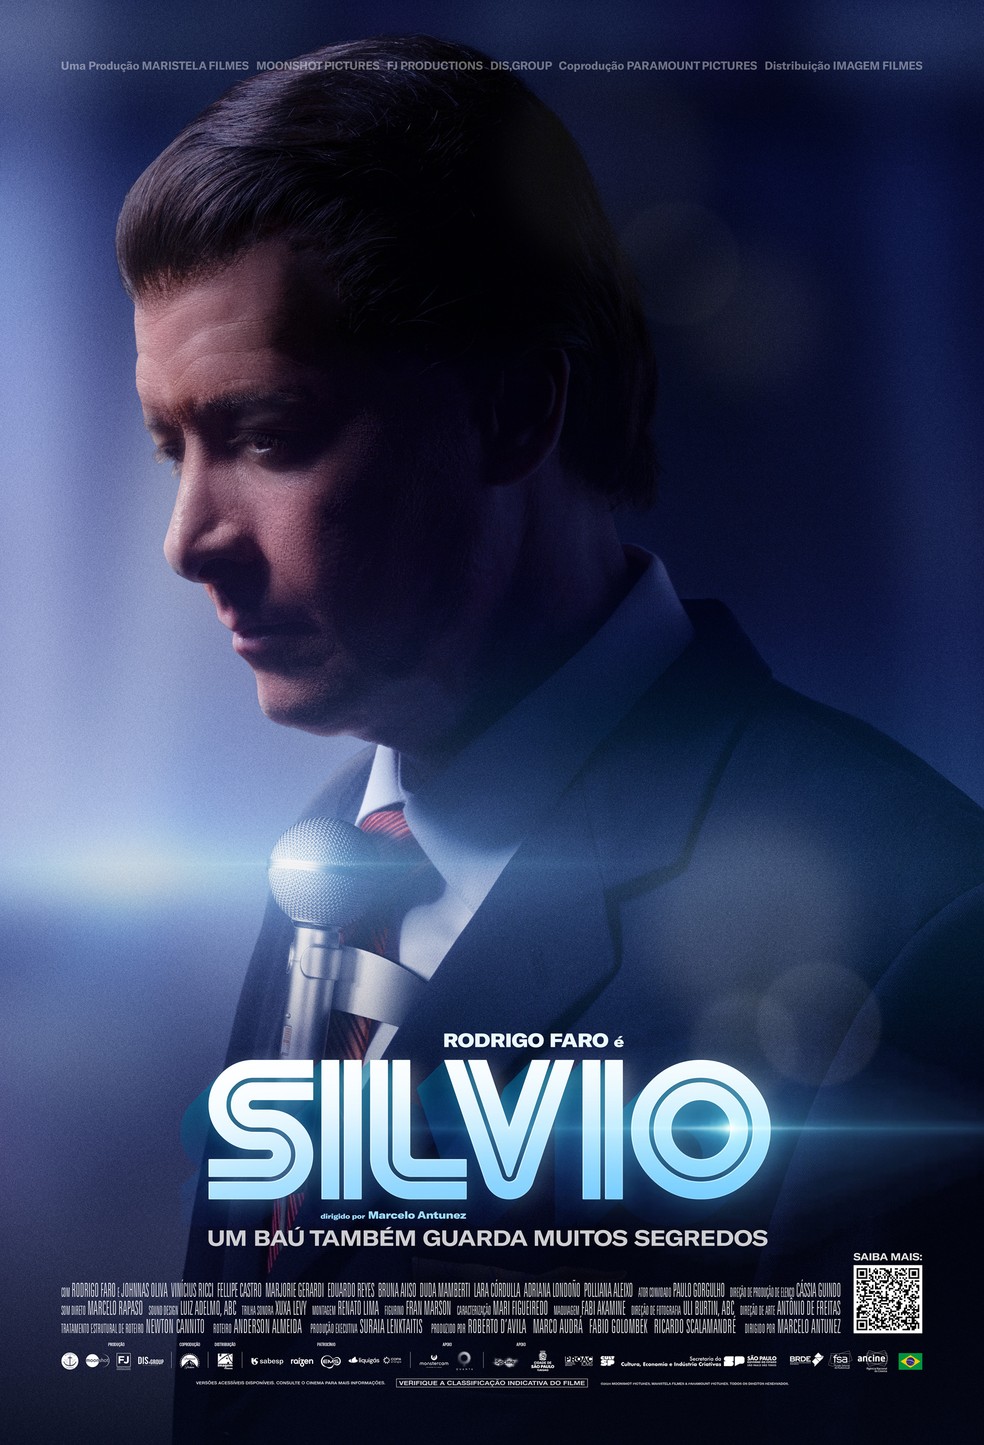 Pôster do filme 'Silvio', cinebiografia de Silvio Santos, protagonizado por Rodrigo Faro — Foto: Reprodução/X/Imagem Filmes